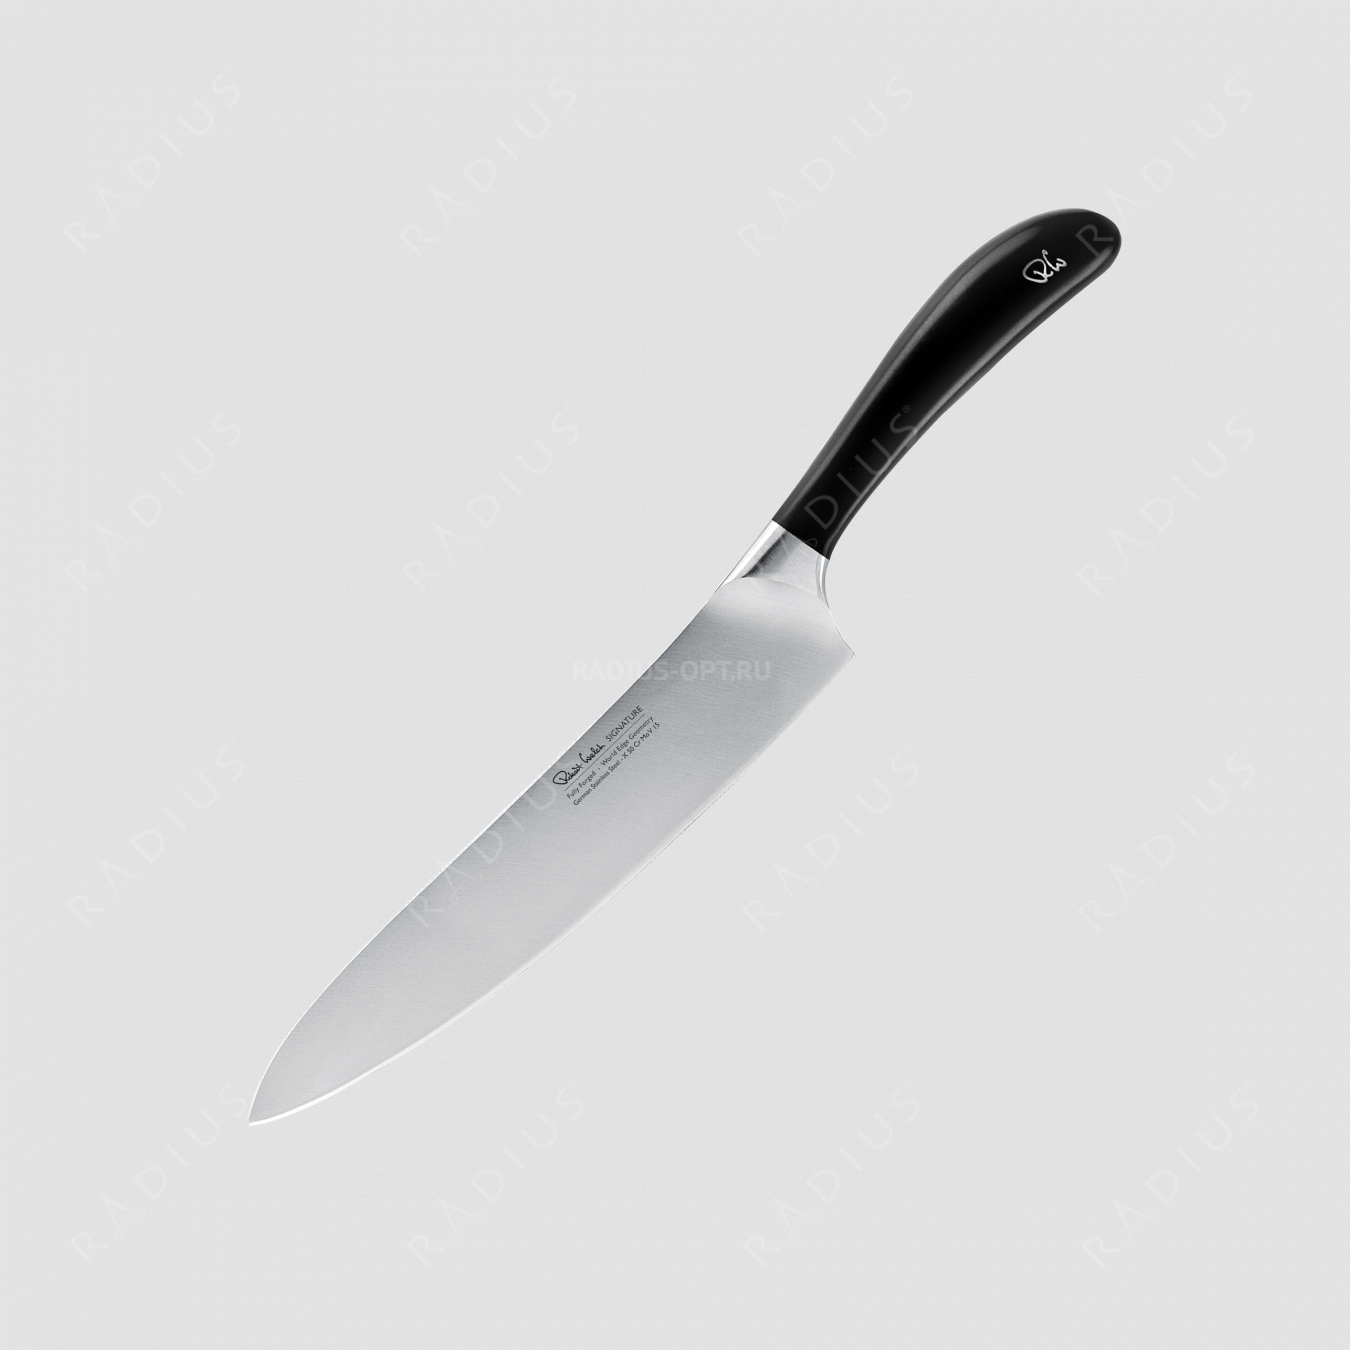 Профессиональный поварской кухонный нож 20 см, серия Signature, ROBERT WELCH, Великобритания